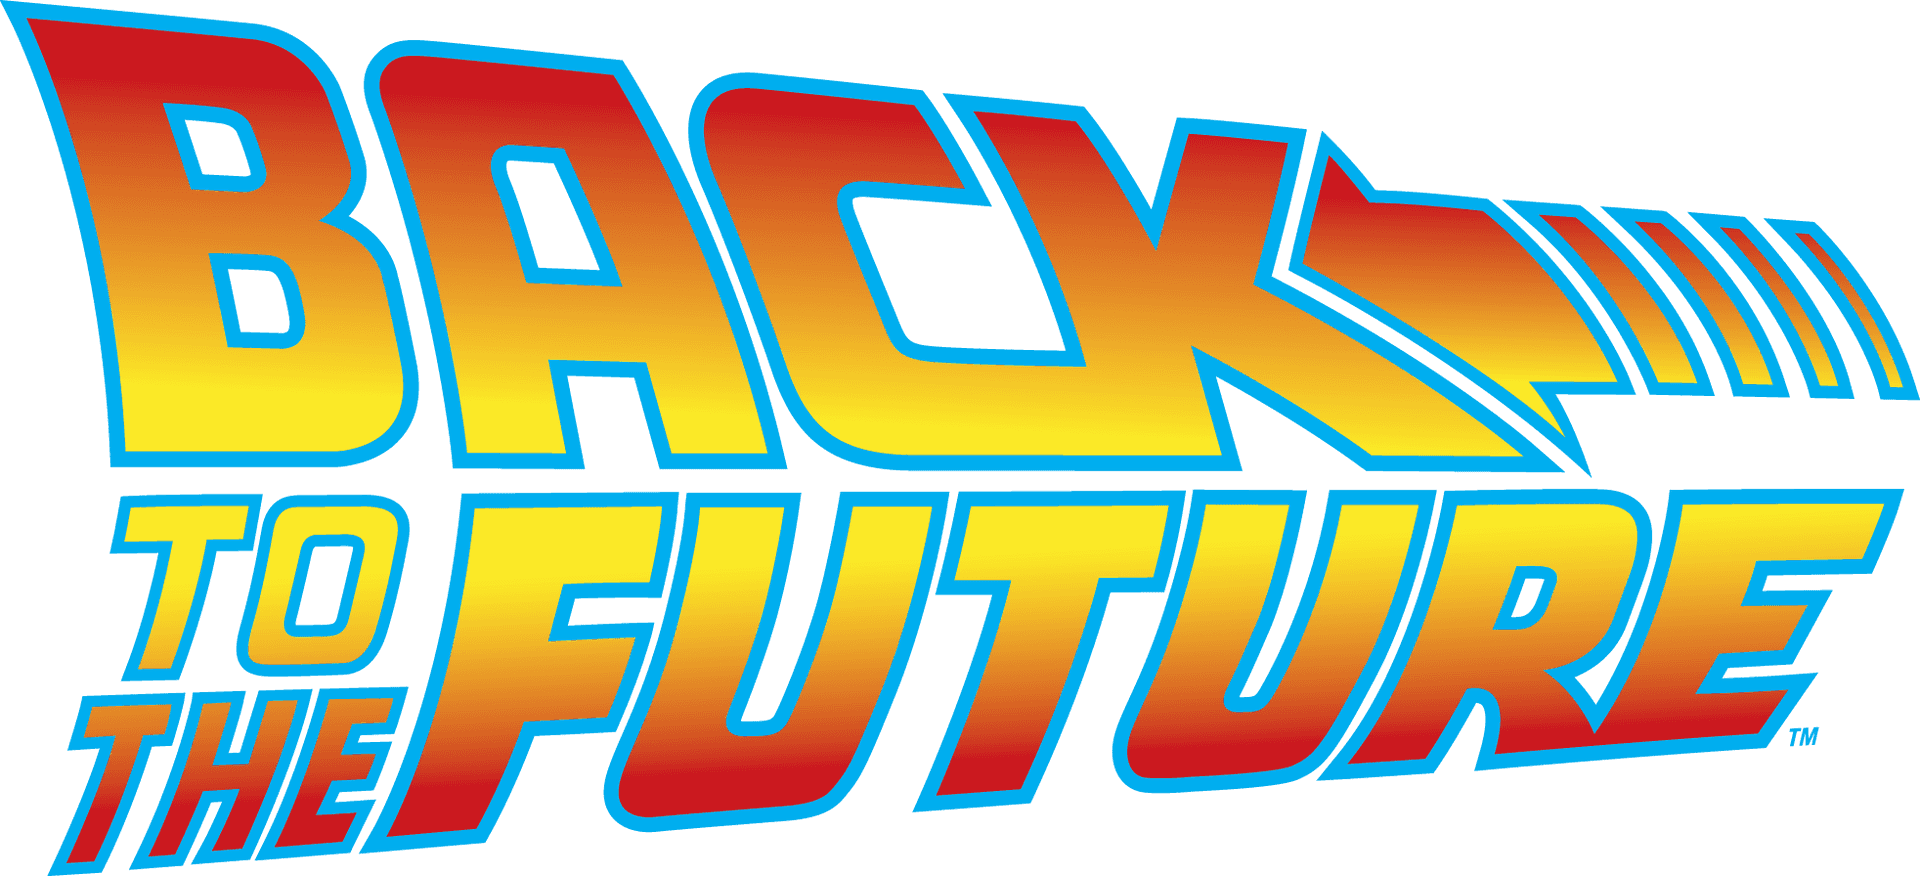 Backtothe Future Logo PNG